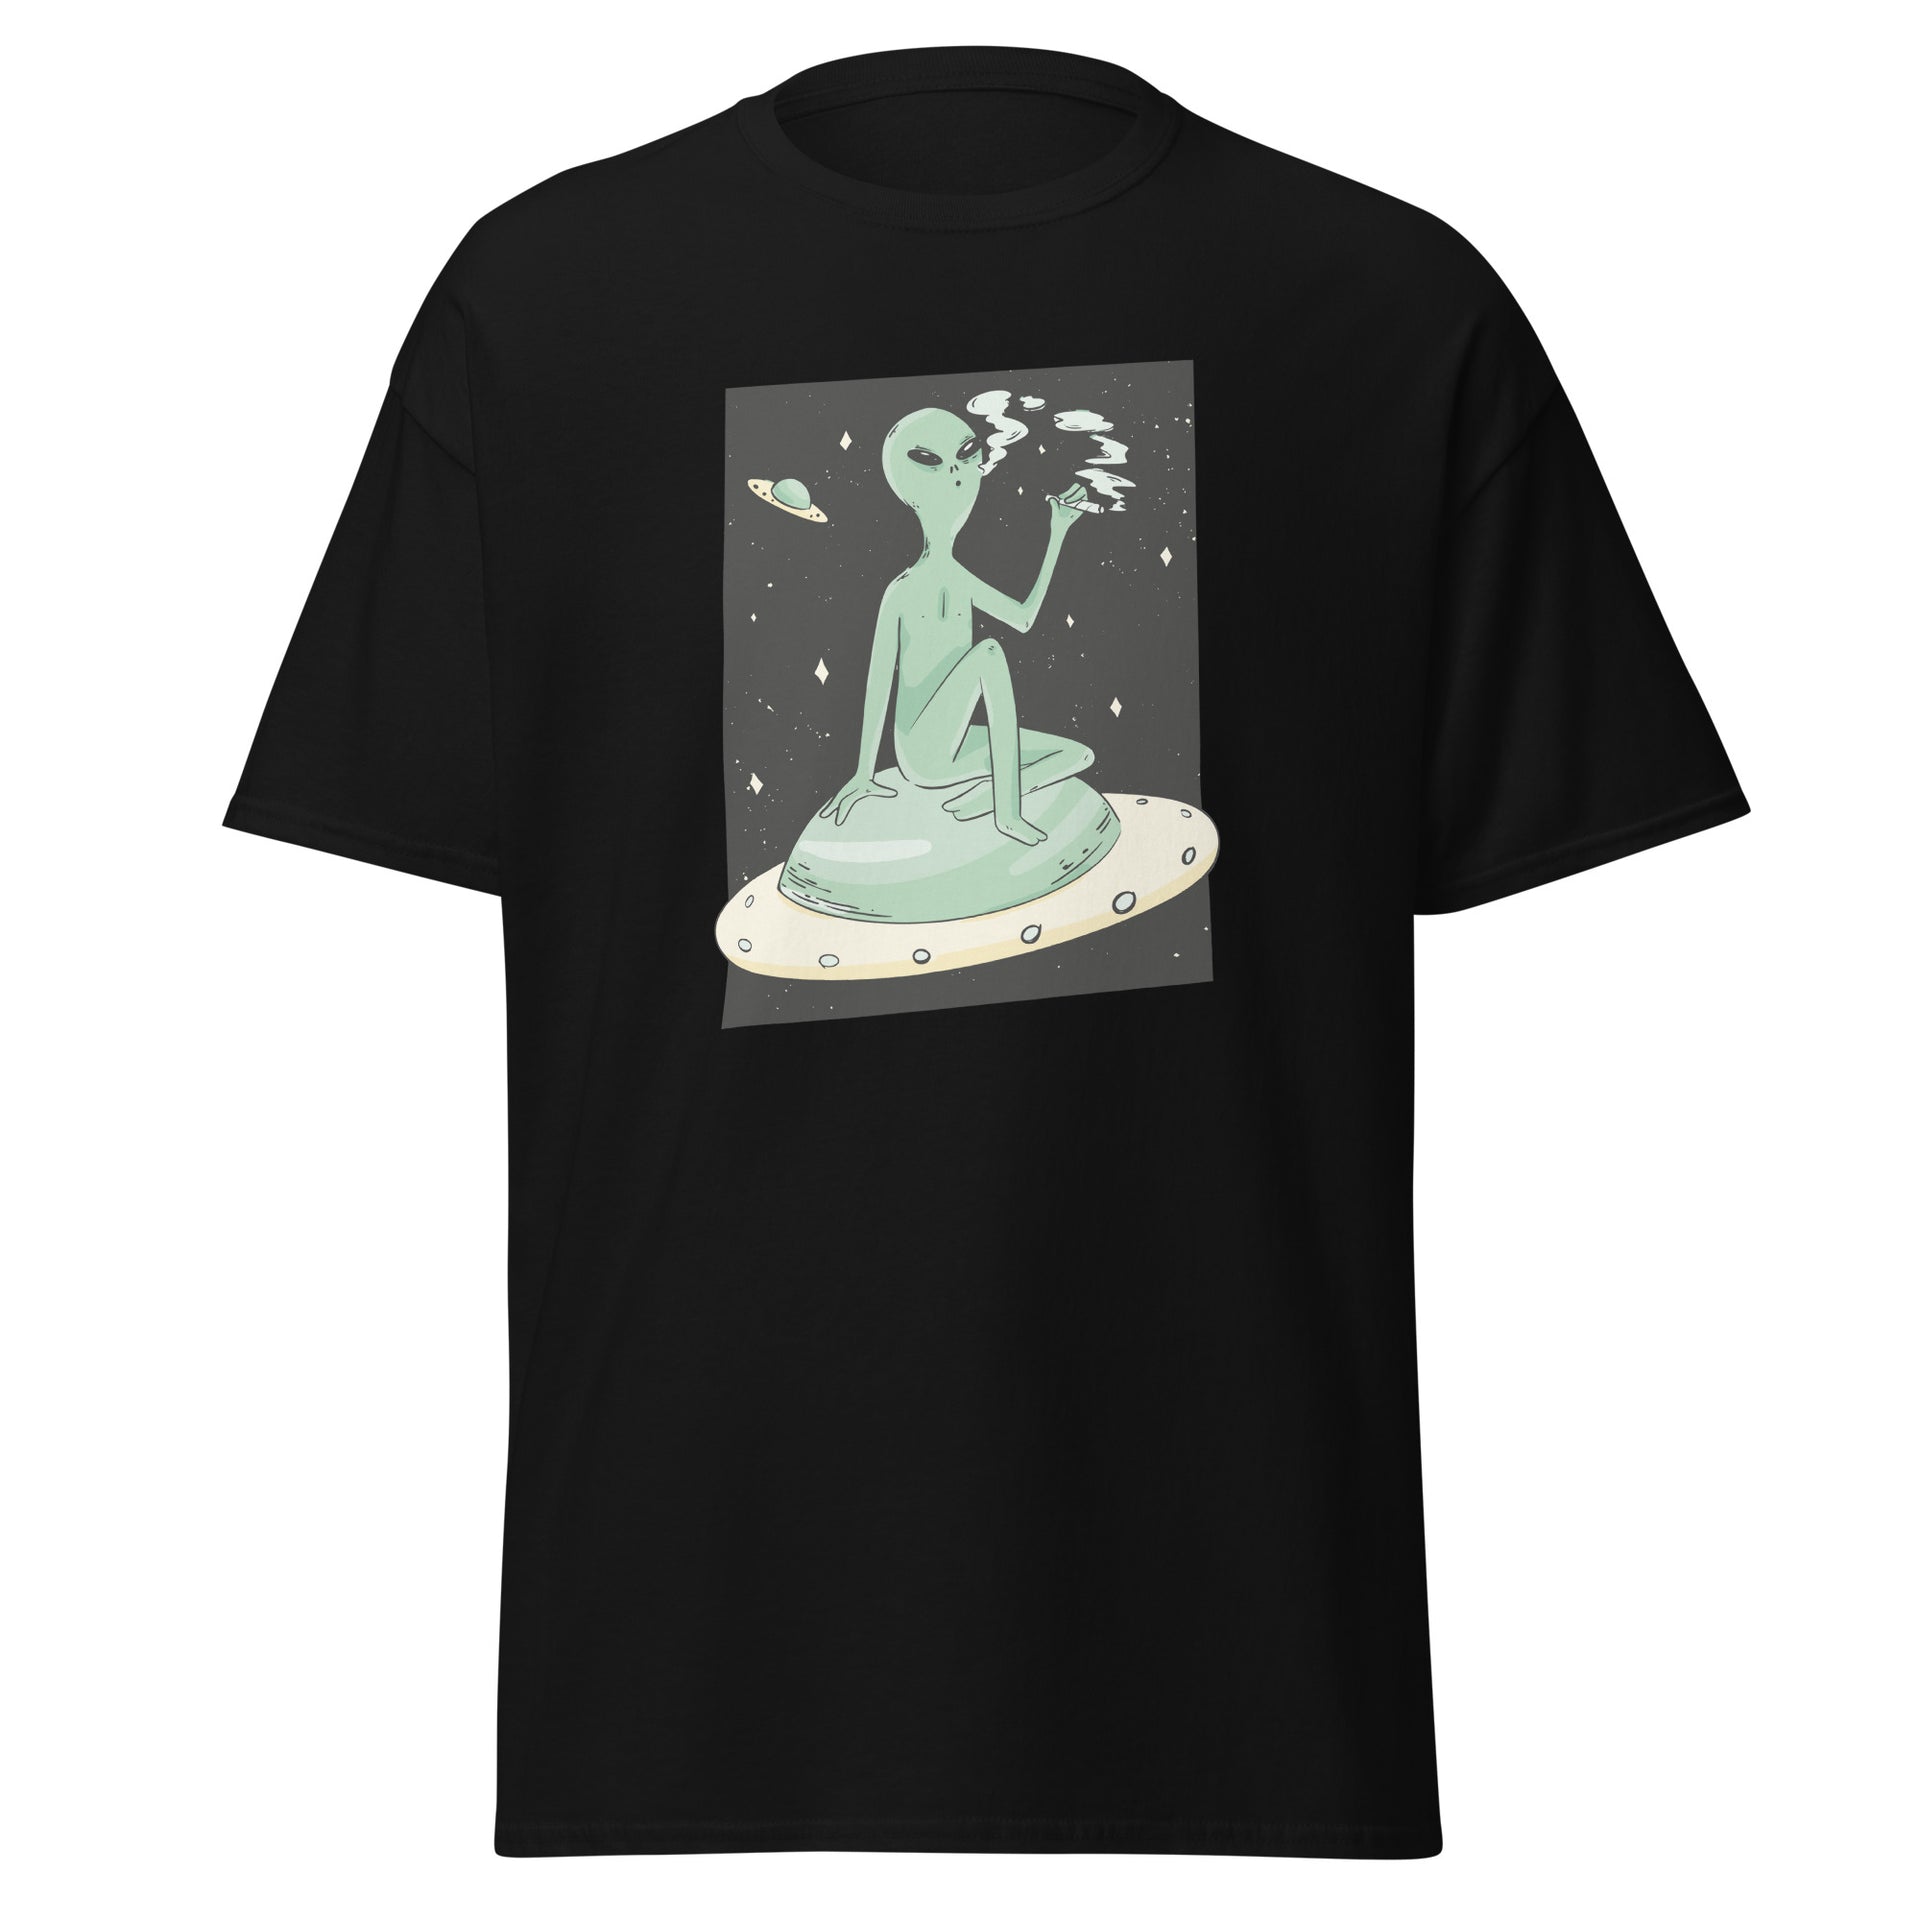 Smoking Alien Men's T-Shirt